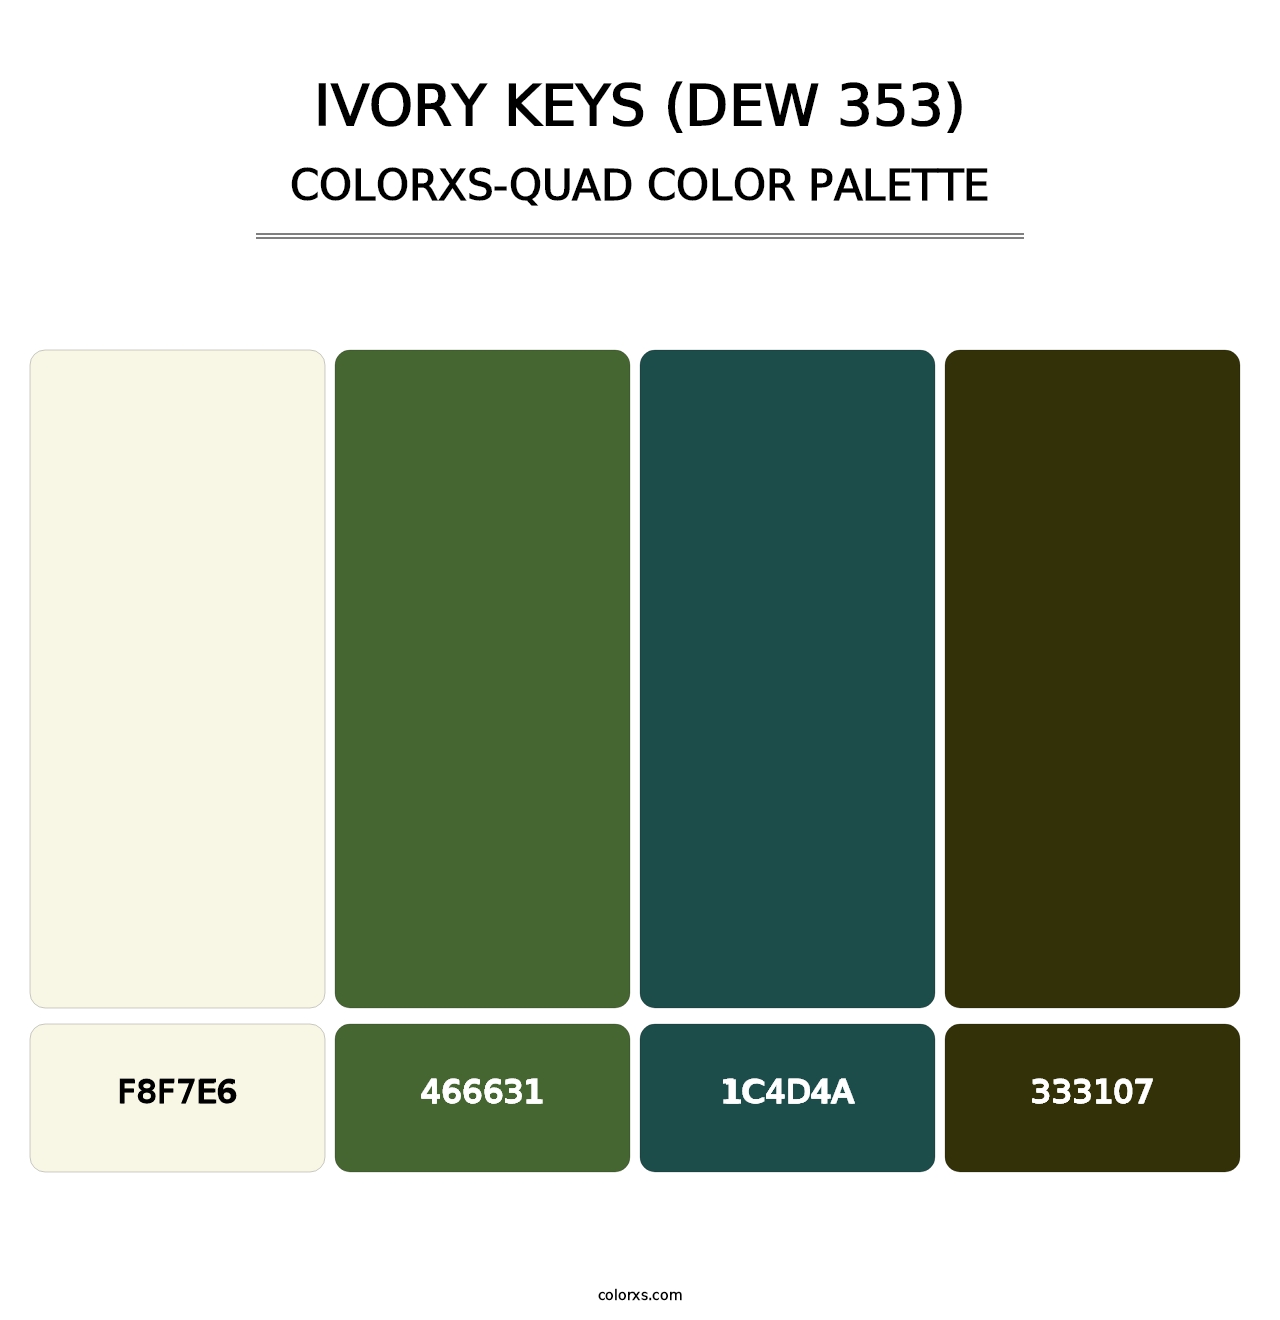 Ivory Keys (DEW 353) - Colorxs Quad Palette